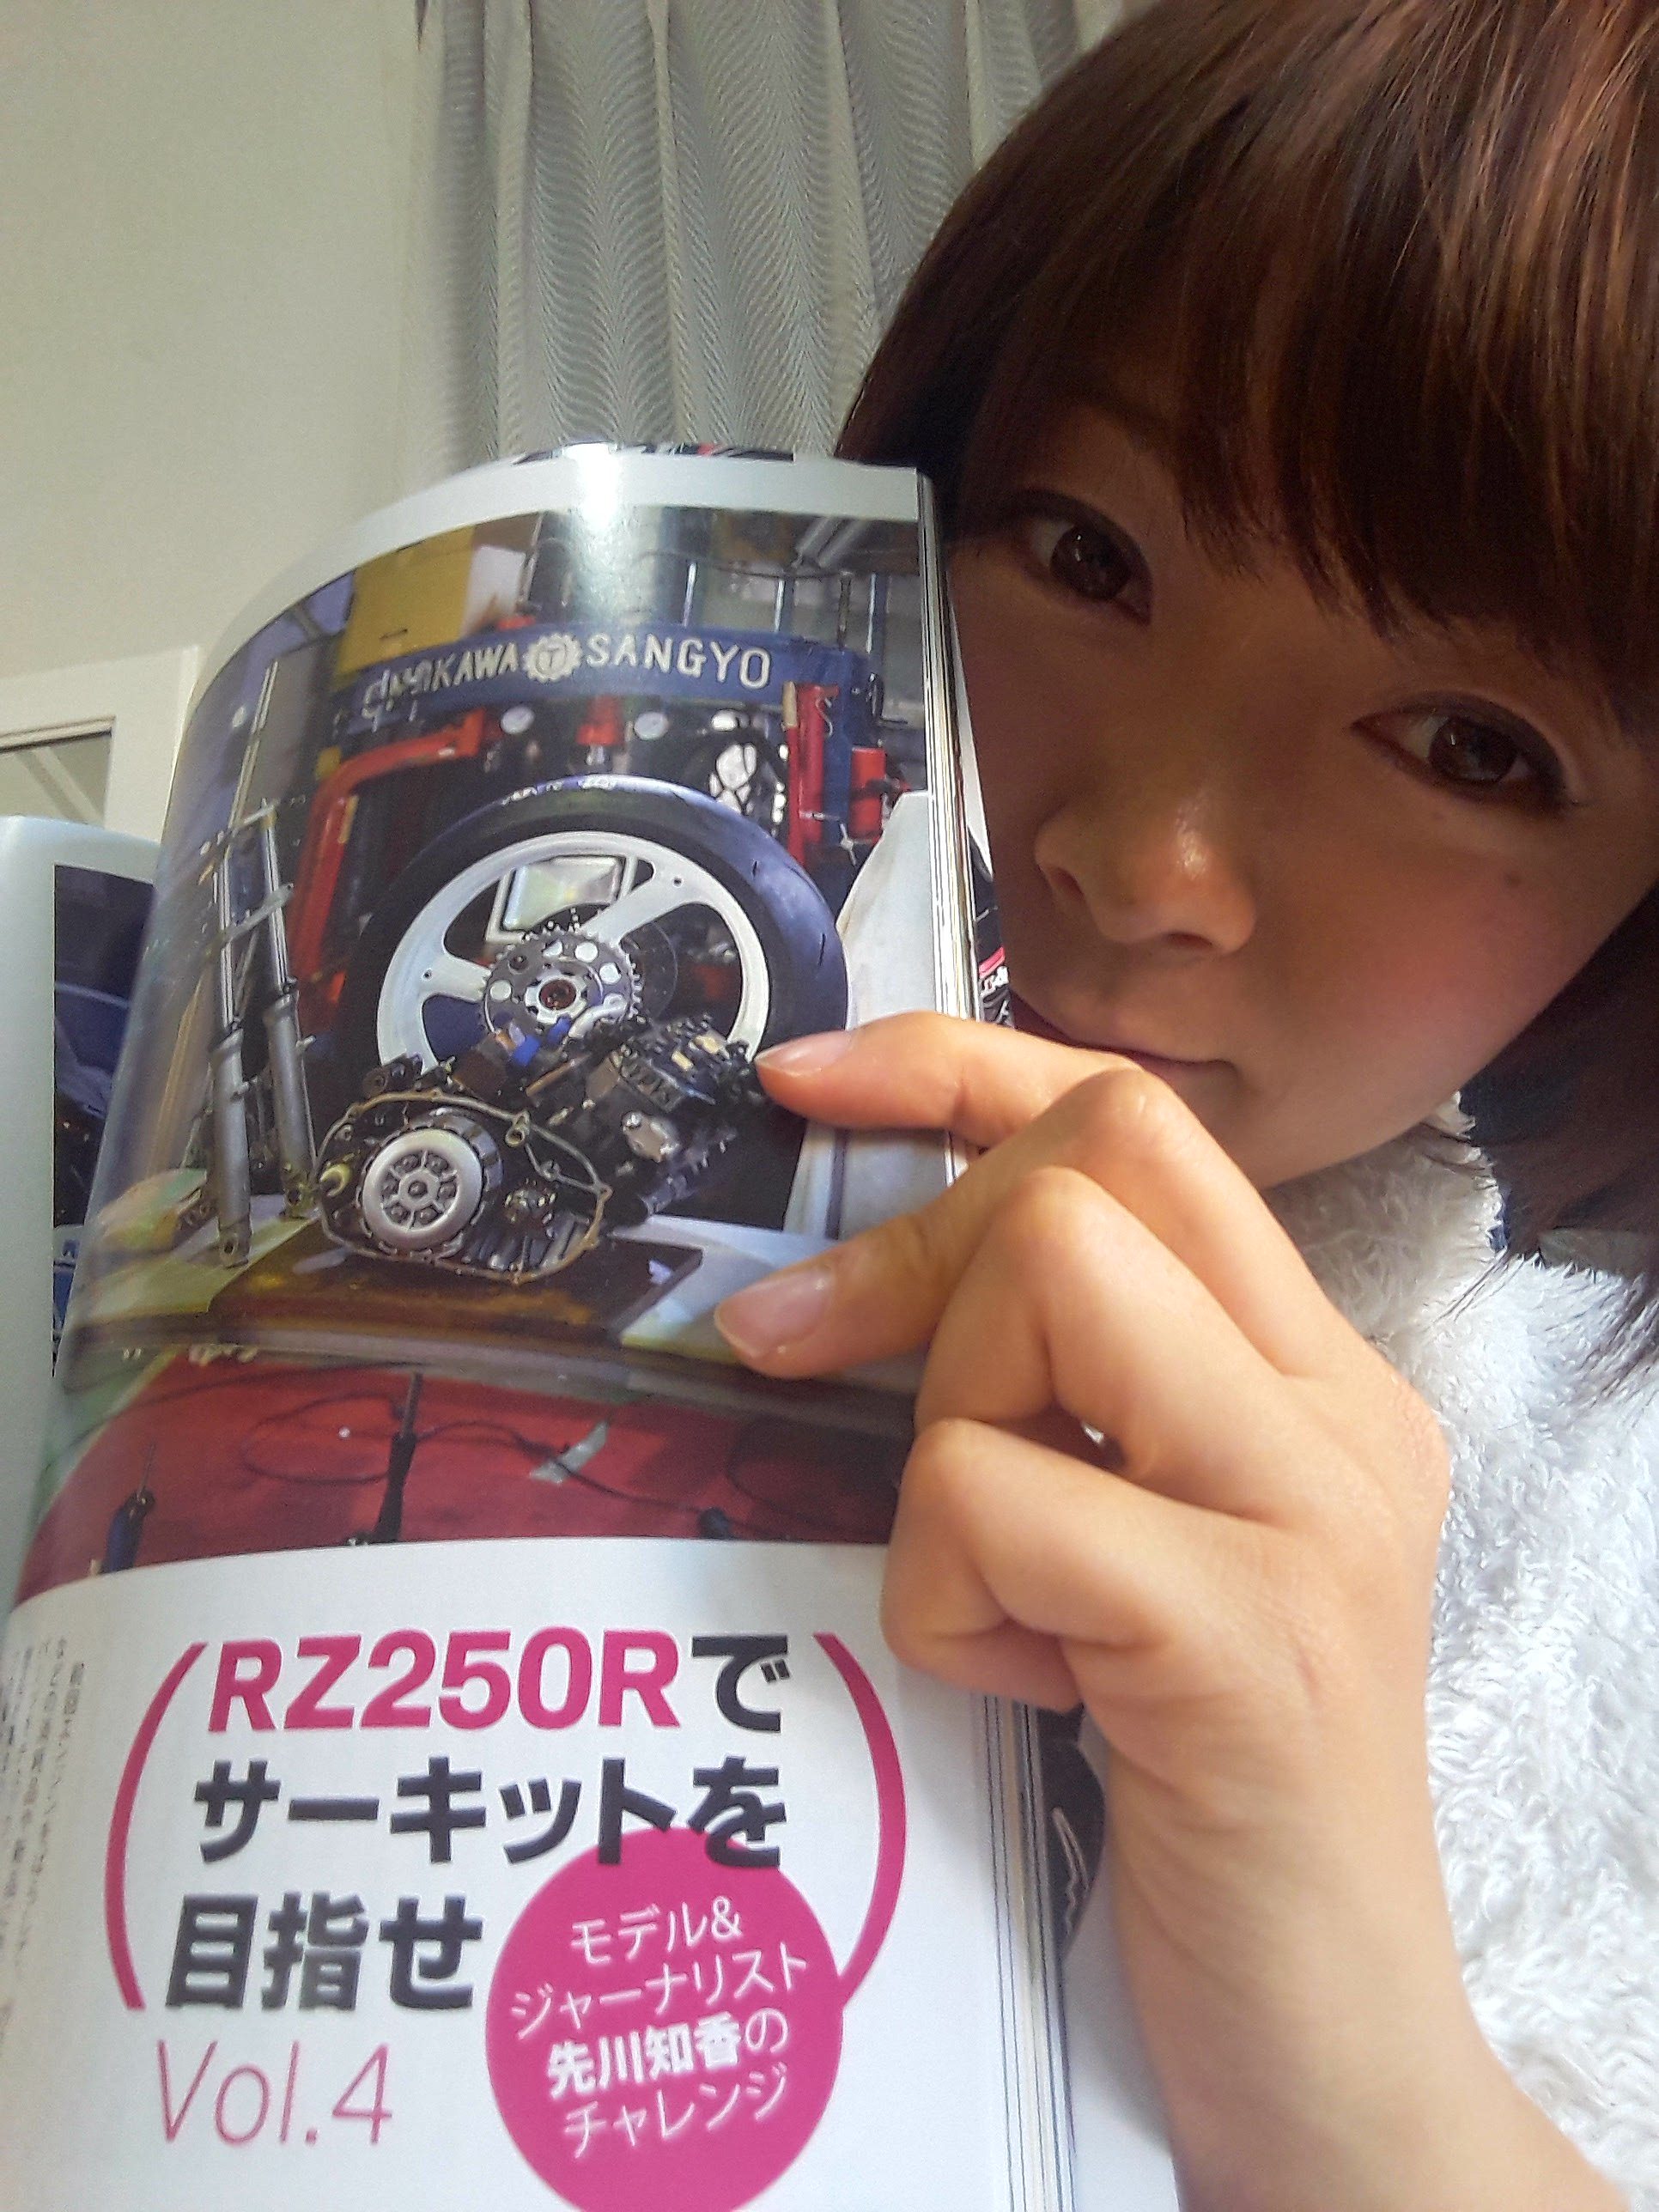 2ストロークマガジン Vol.15 (NEKO MOOK)が発売されました。